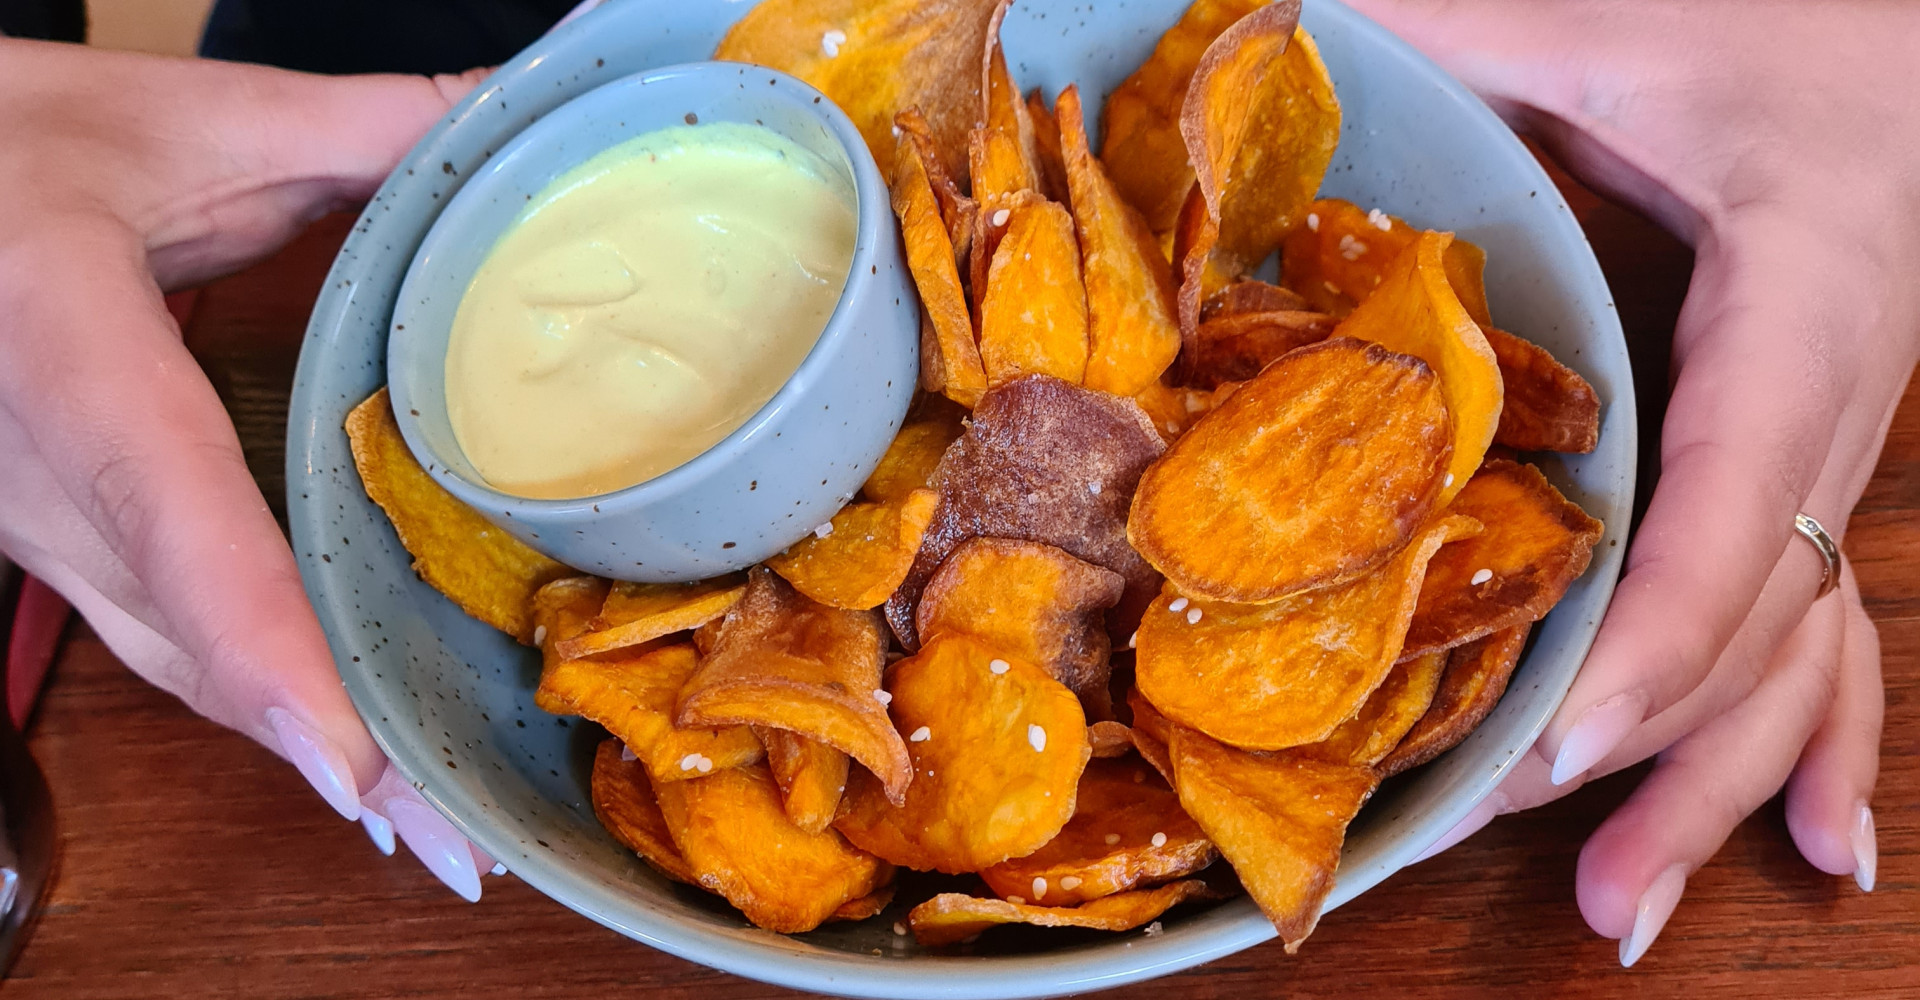 Kartoffelhaus in Freiburg: Eine Schüssel Chips mit Dip